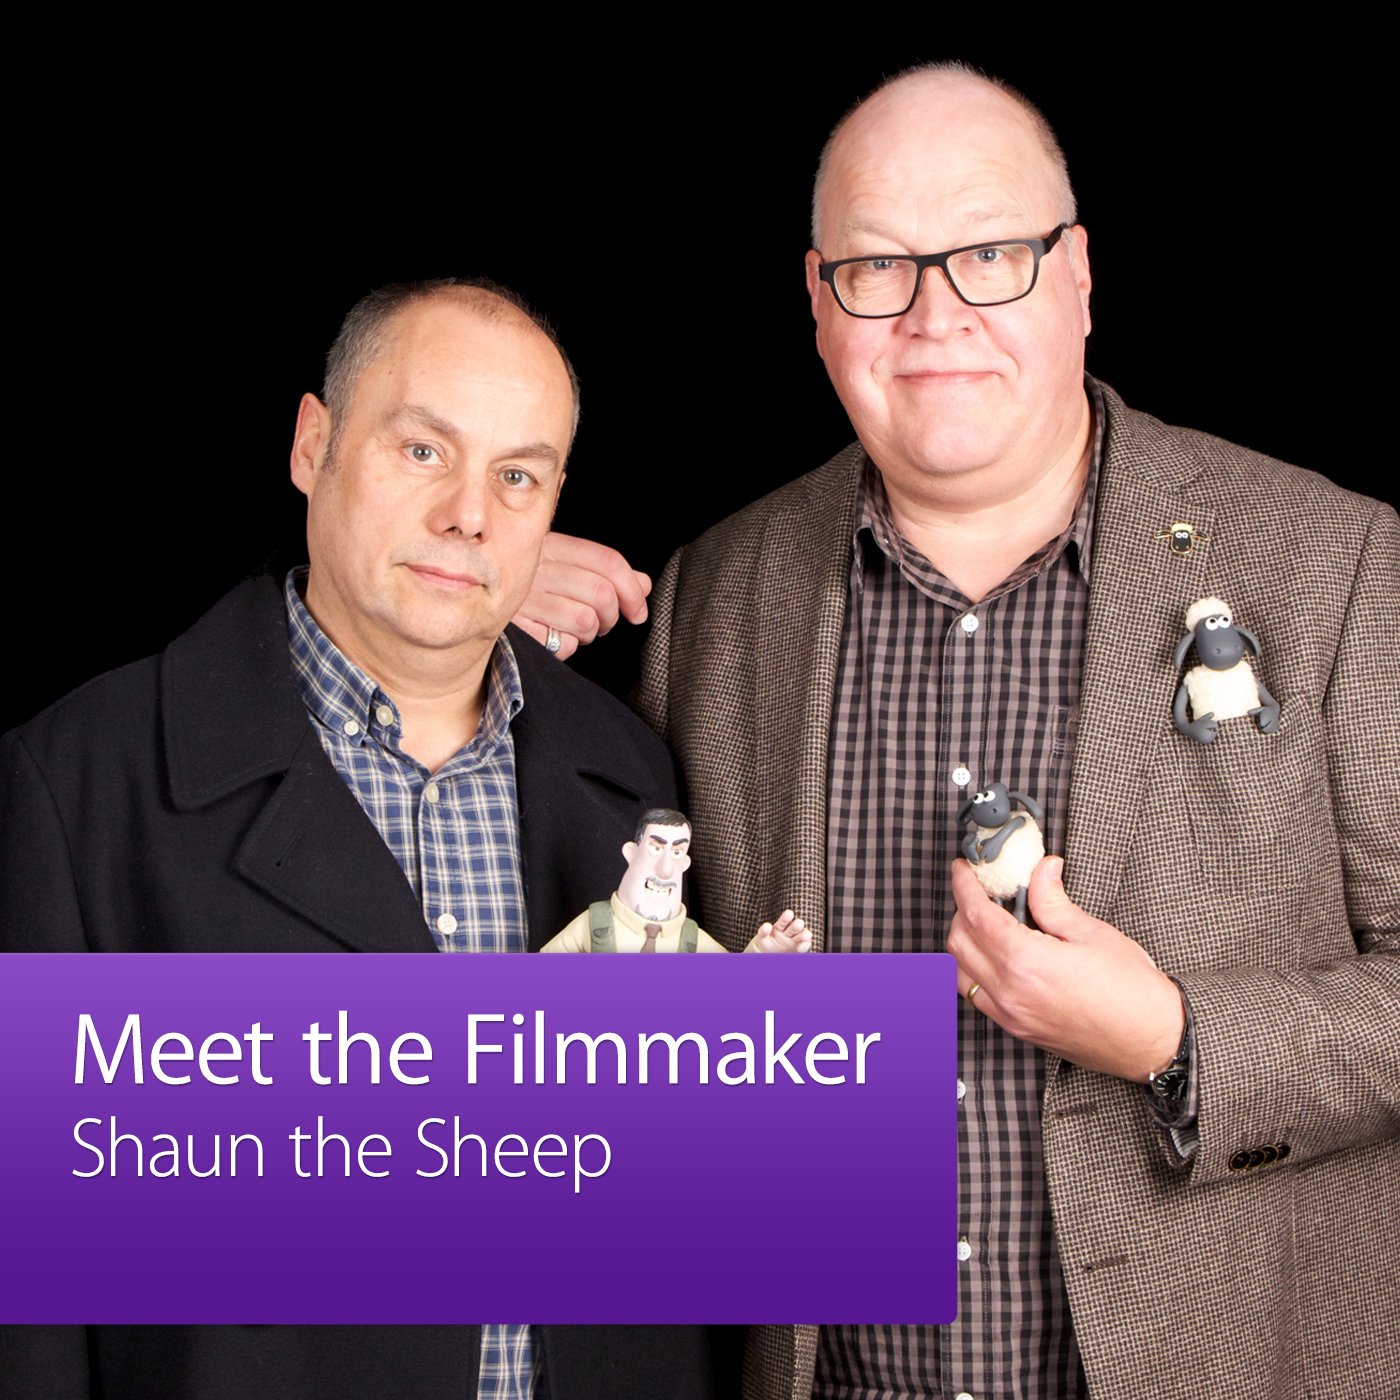 Shaun the Sheep: Meet the Filmmaker